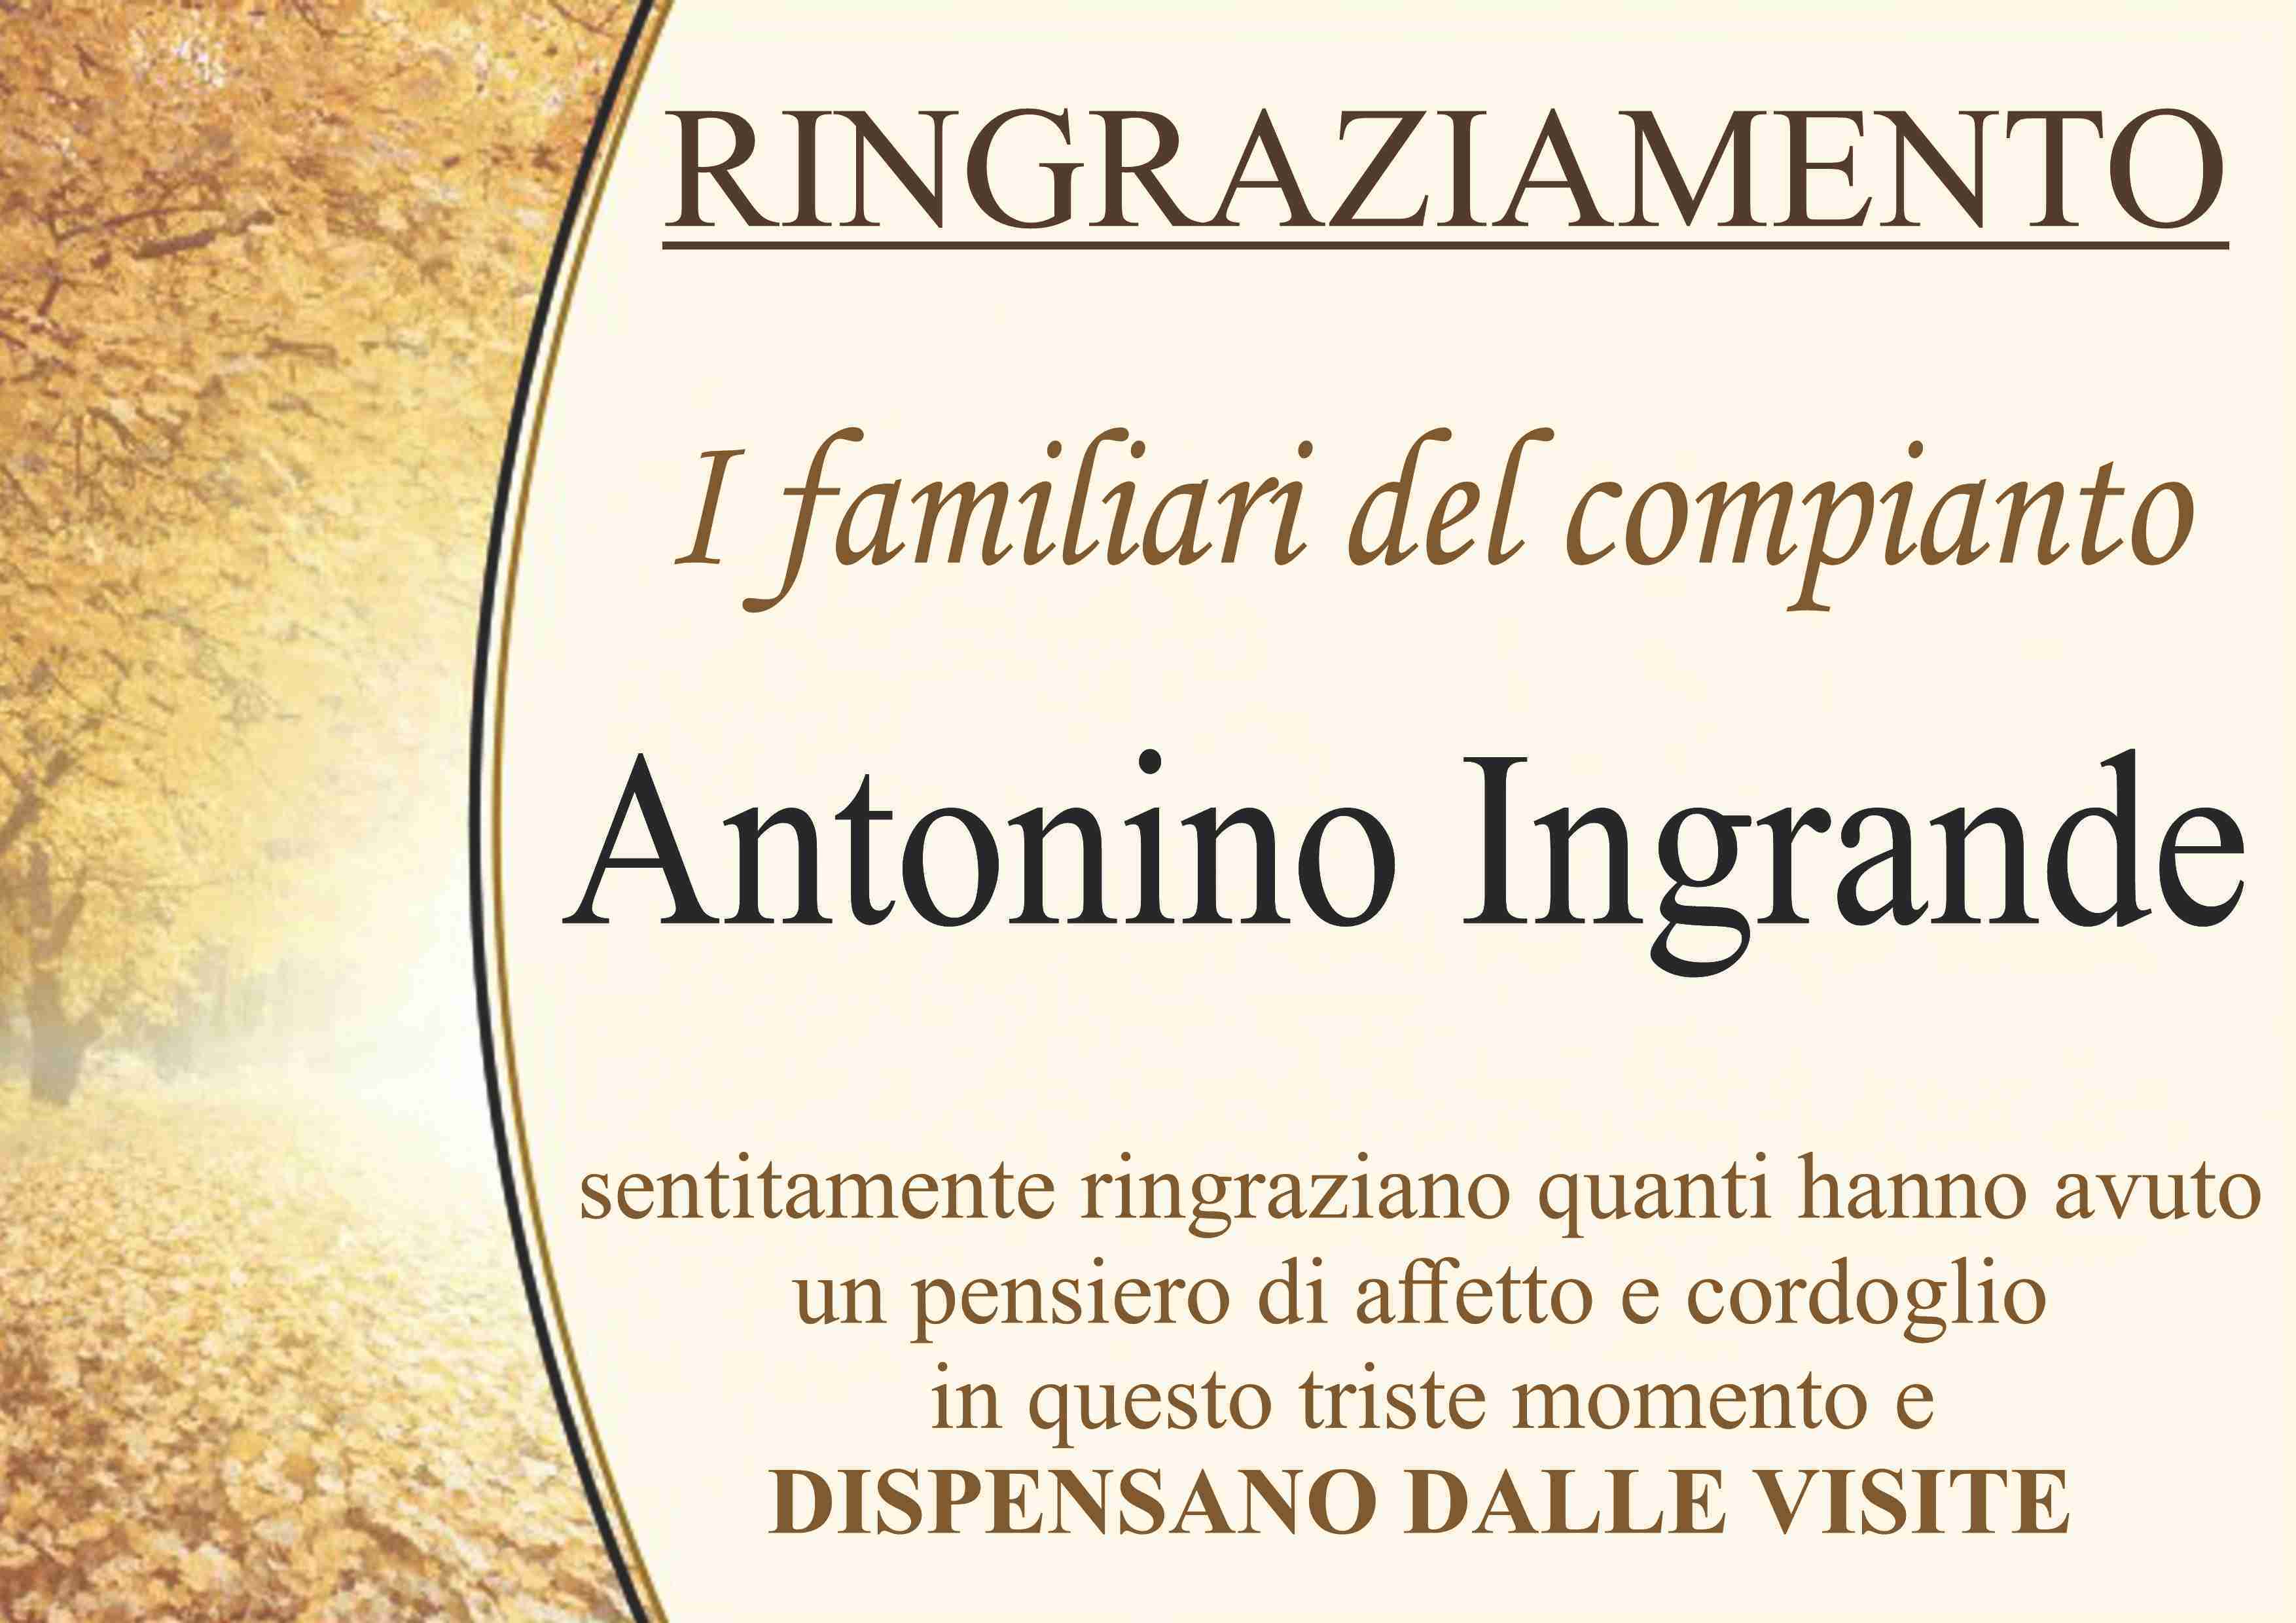 Antonino Ingrande